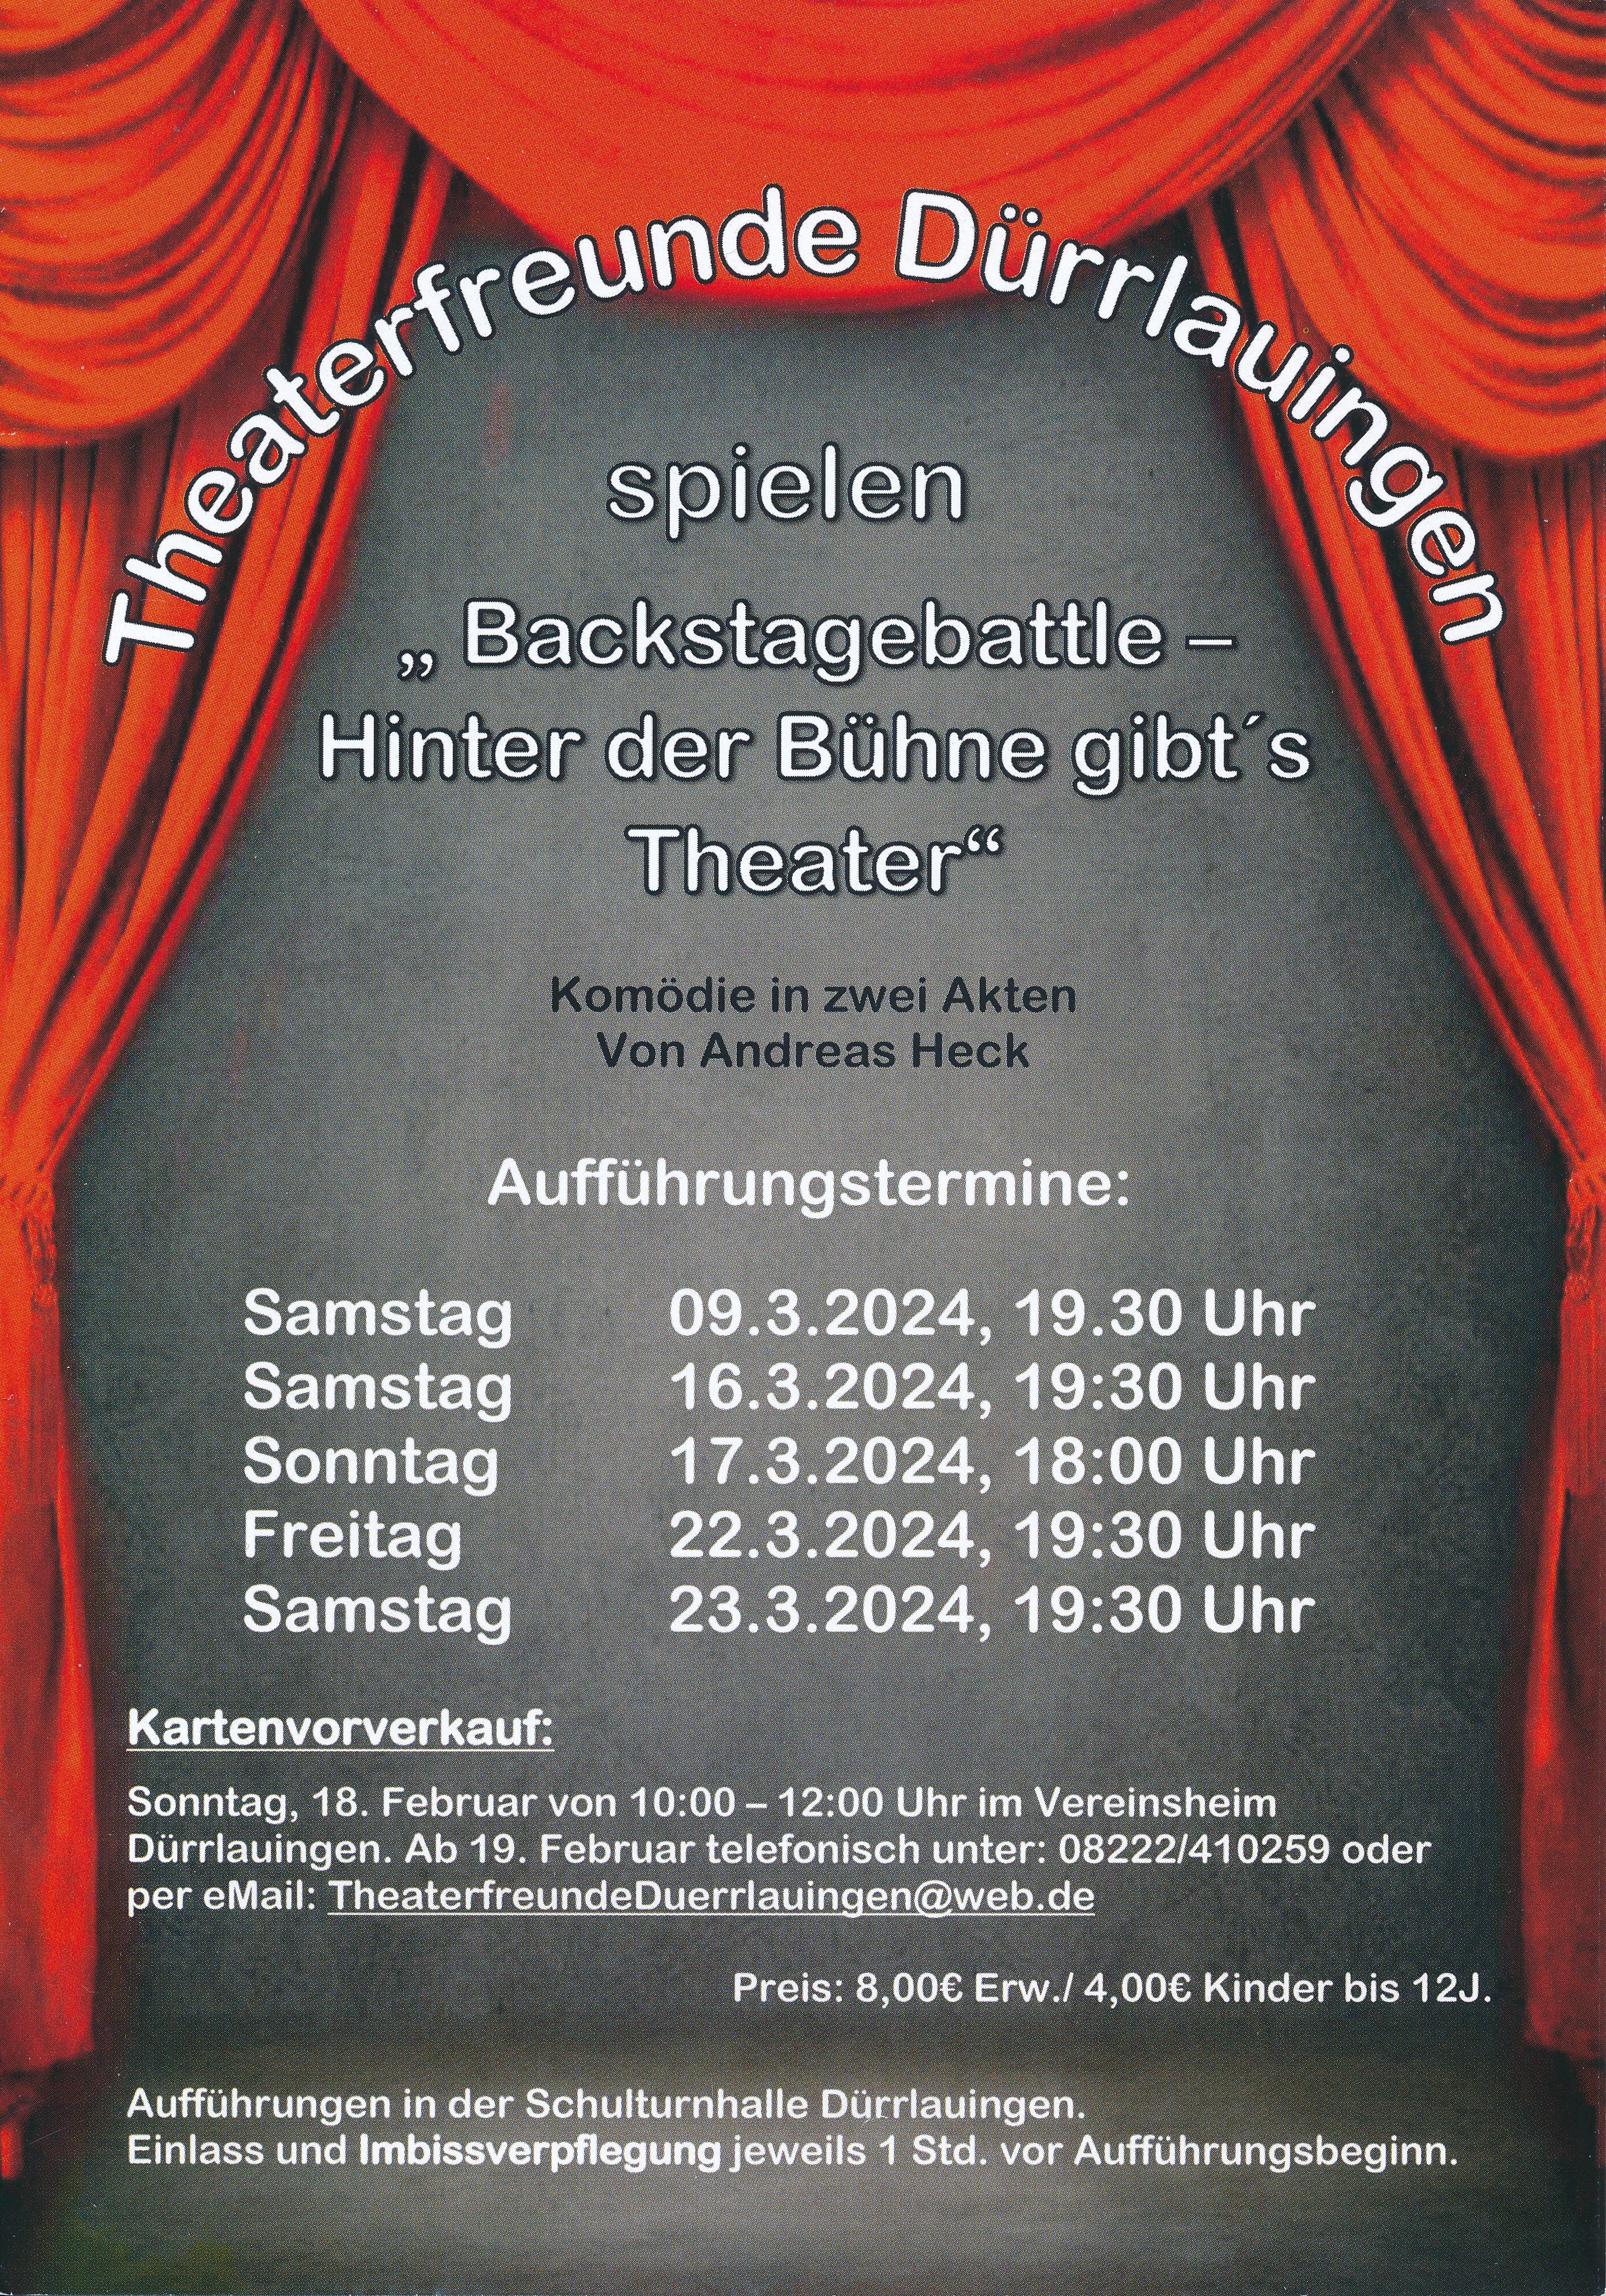 Plakat der Theaterfreunde Duerrlauingen zu "Backstagebattle"